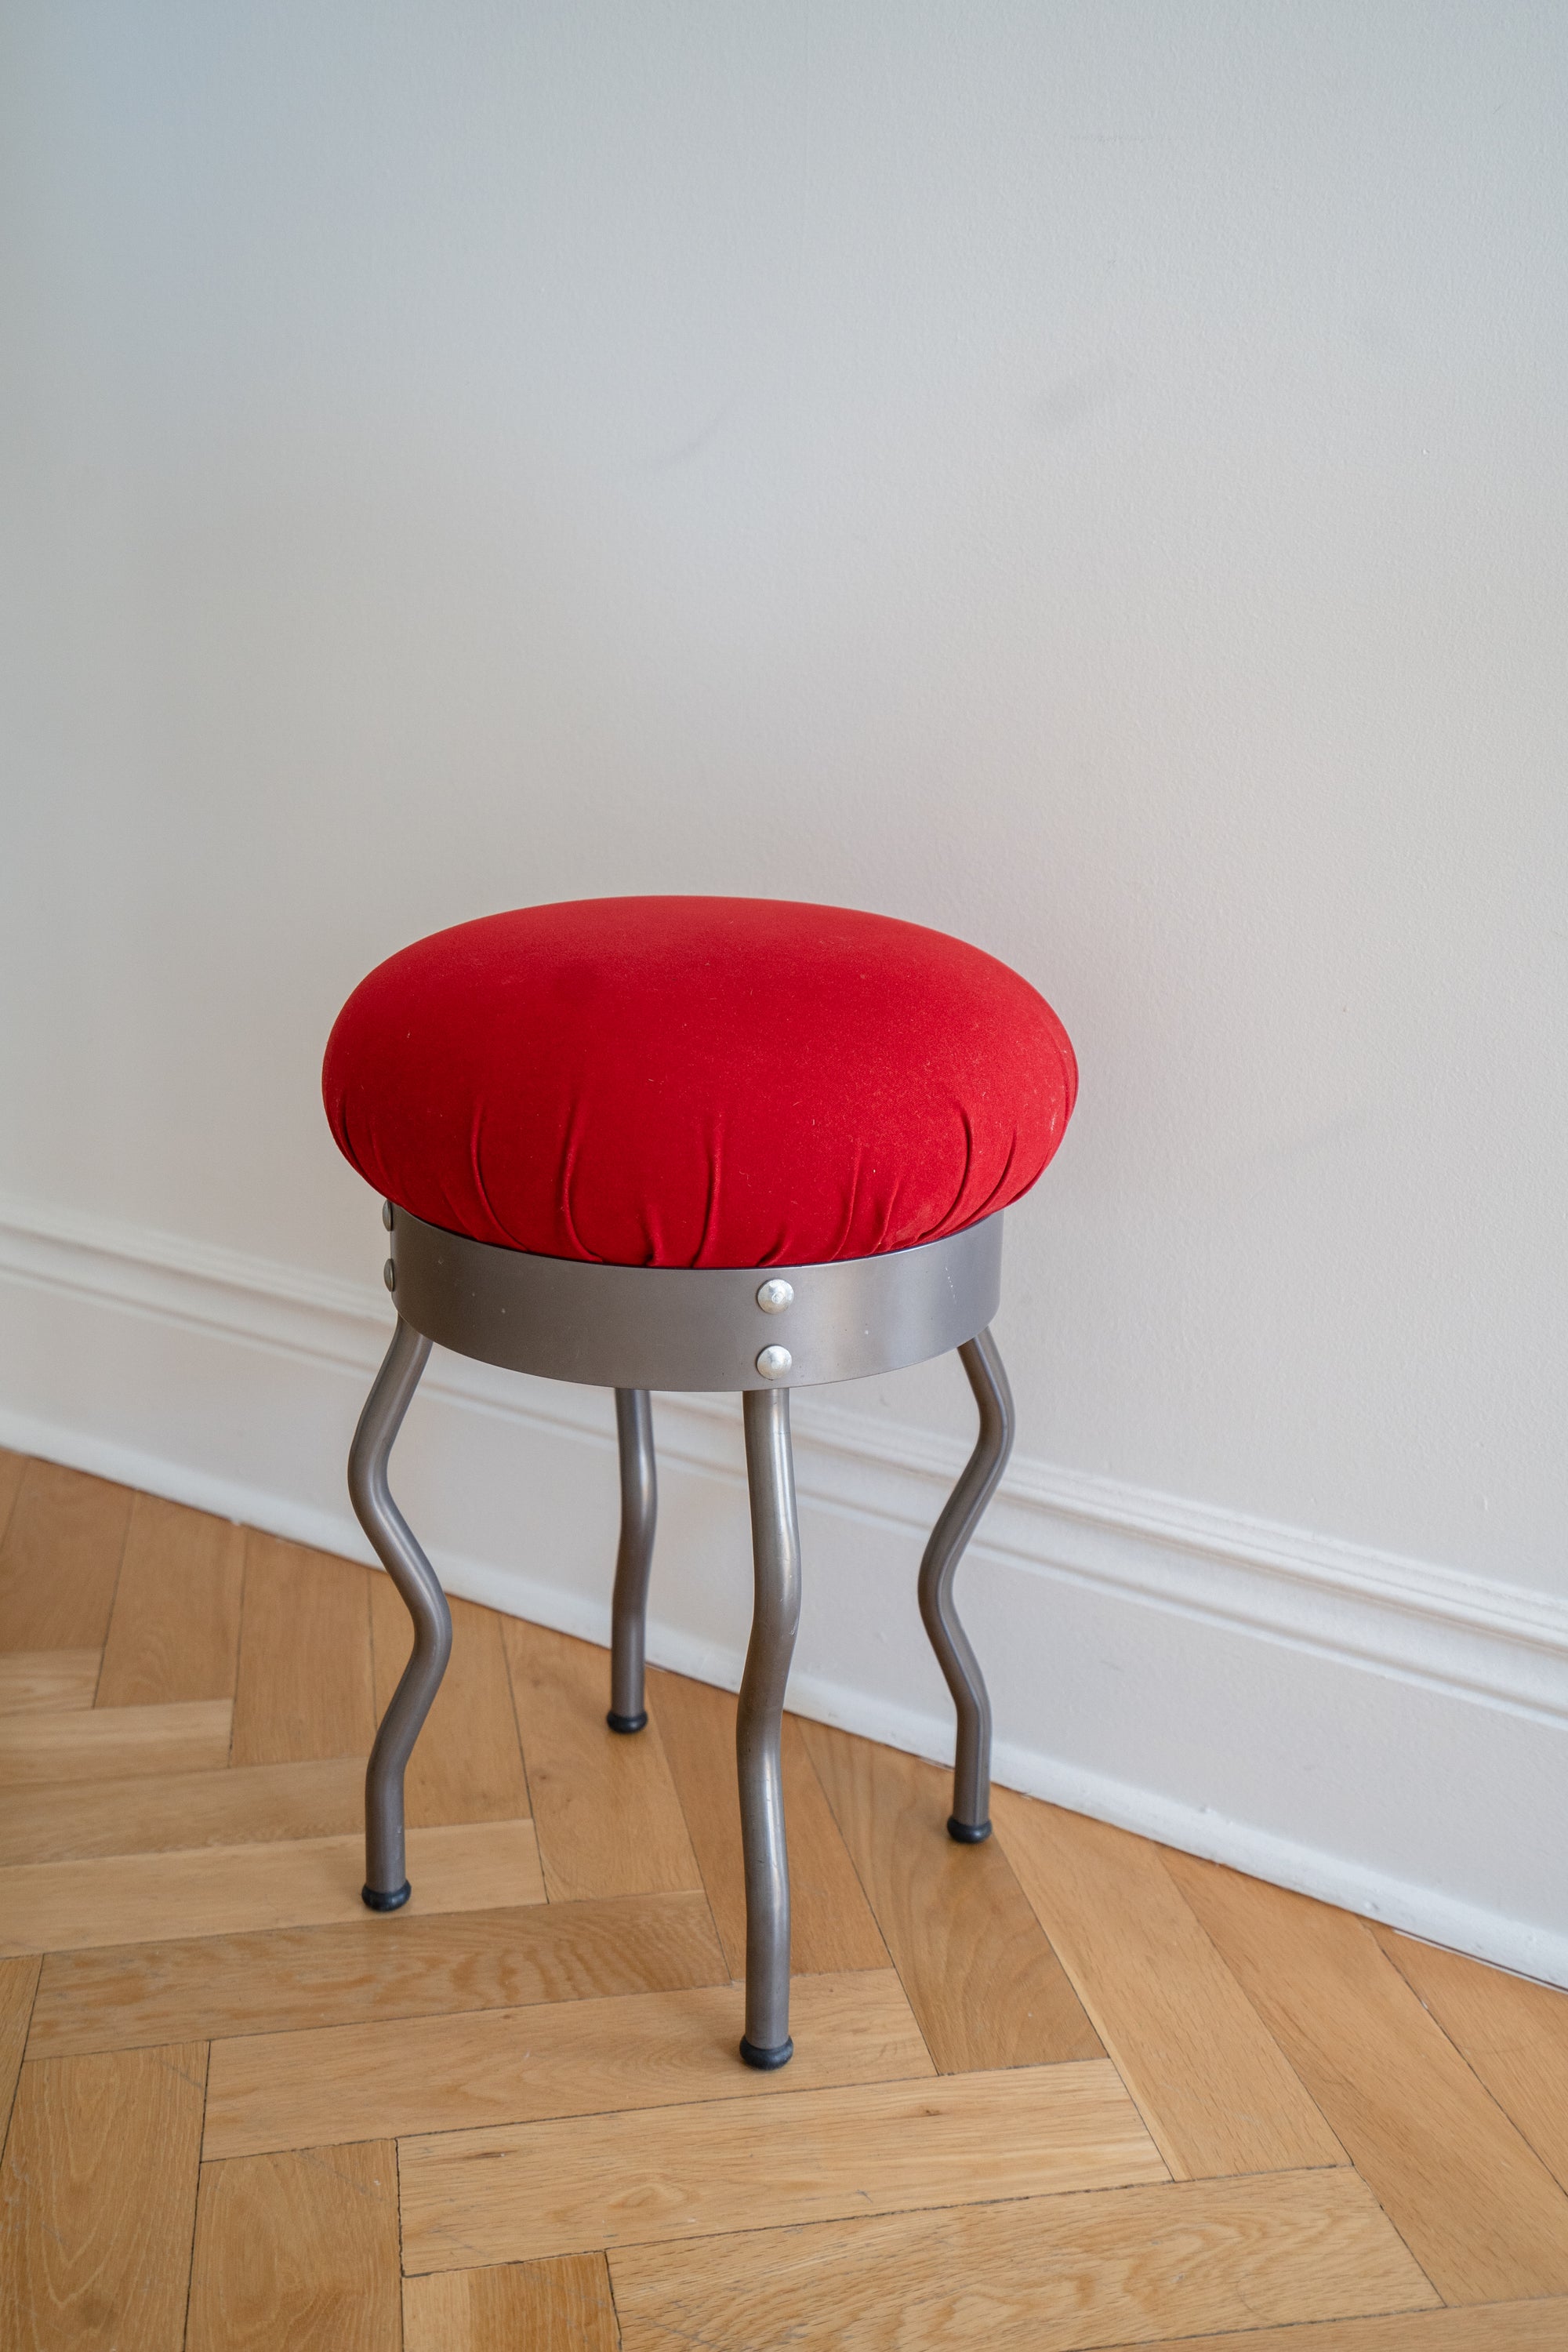 Vintage Uri IKEA stool